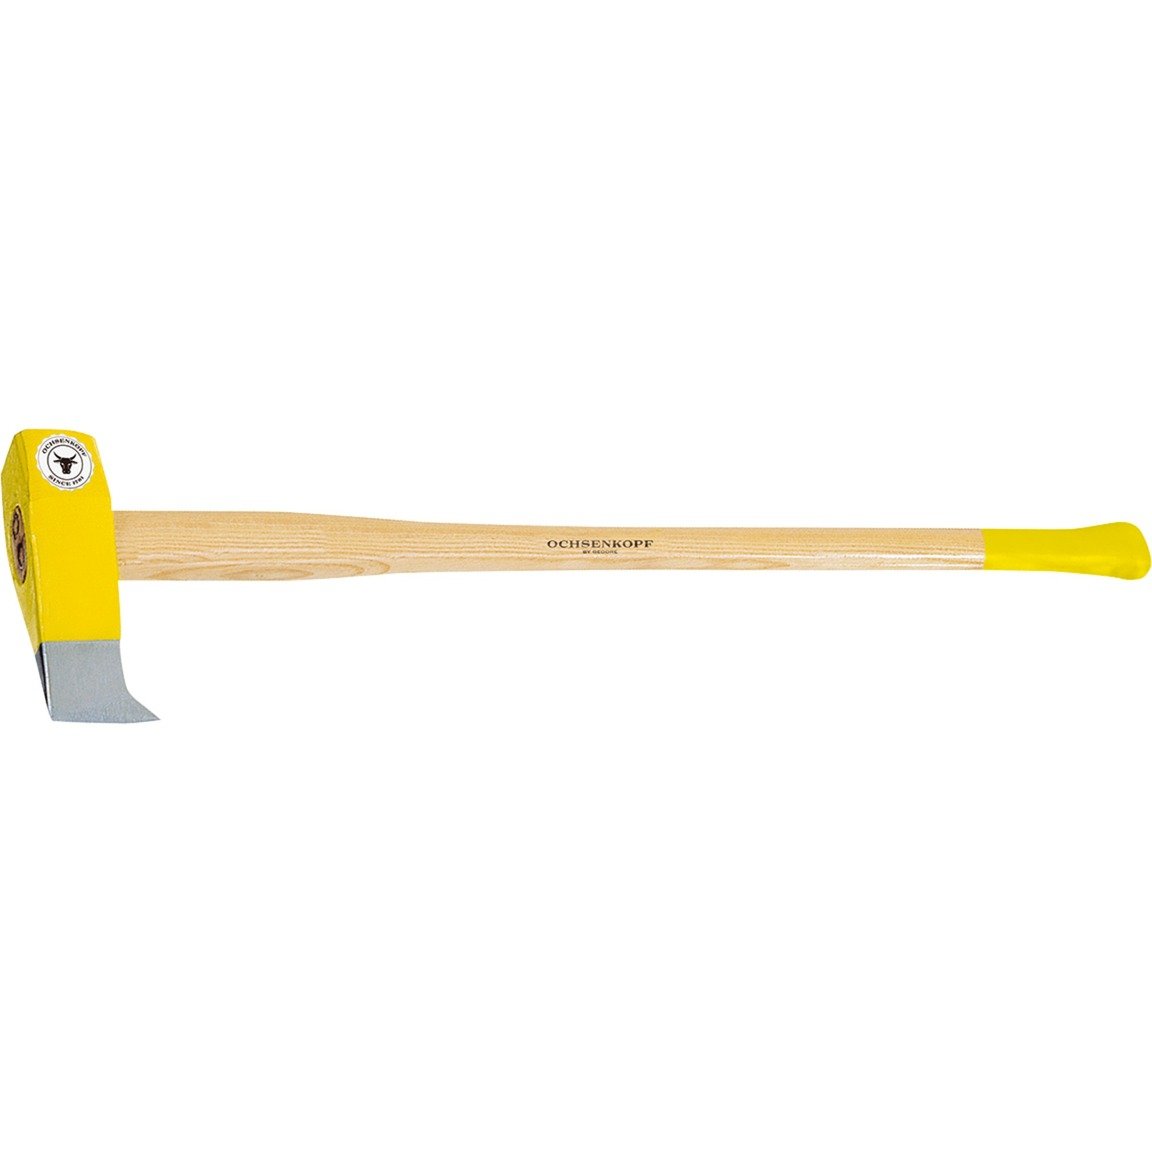 Image of Alternate - PROFI-Holzspalthammer OX 35 E-3001, Axt/Beil online einkaufen bei Alternate